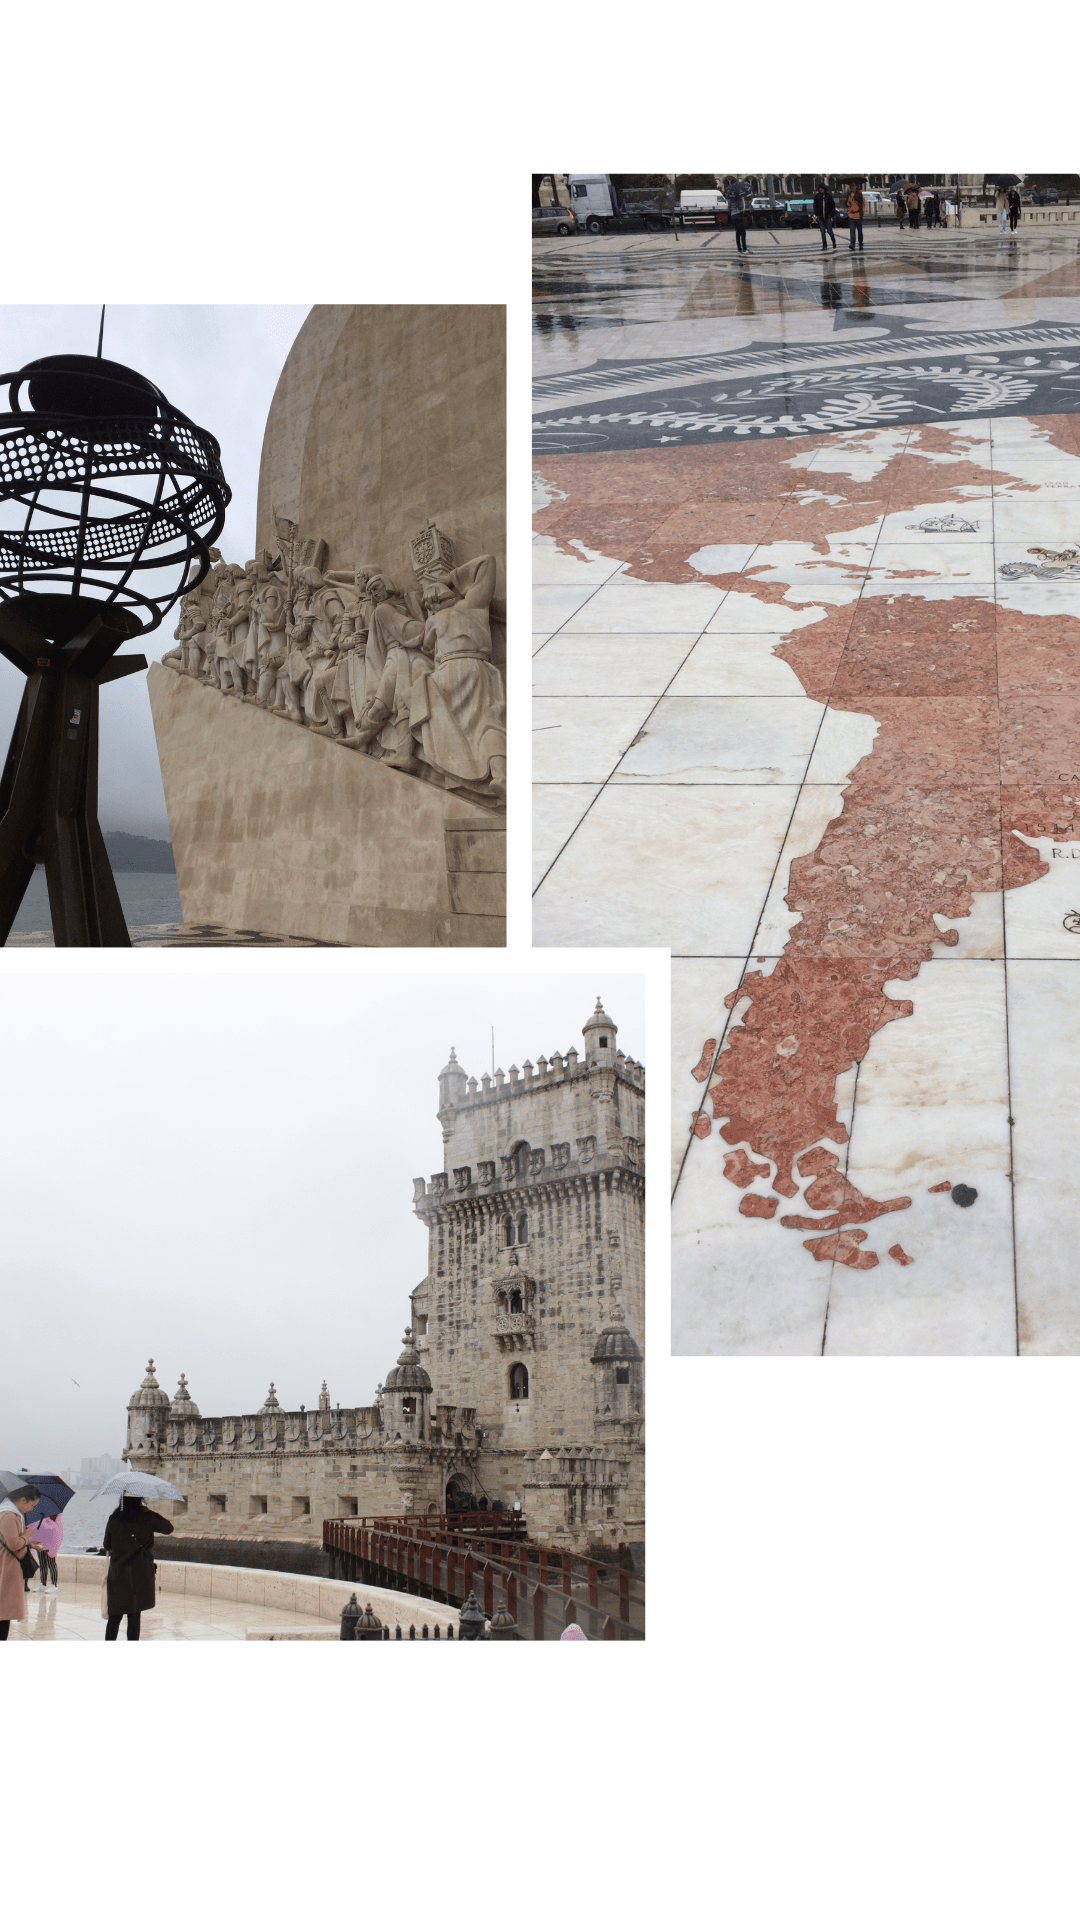 Torre de Bélem, Portugal Road Trip